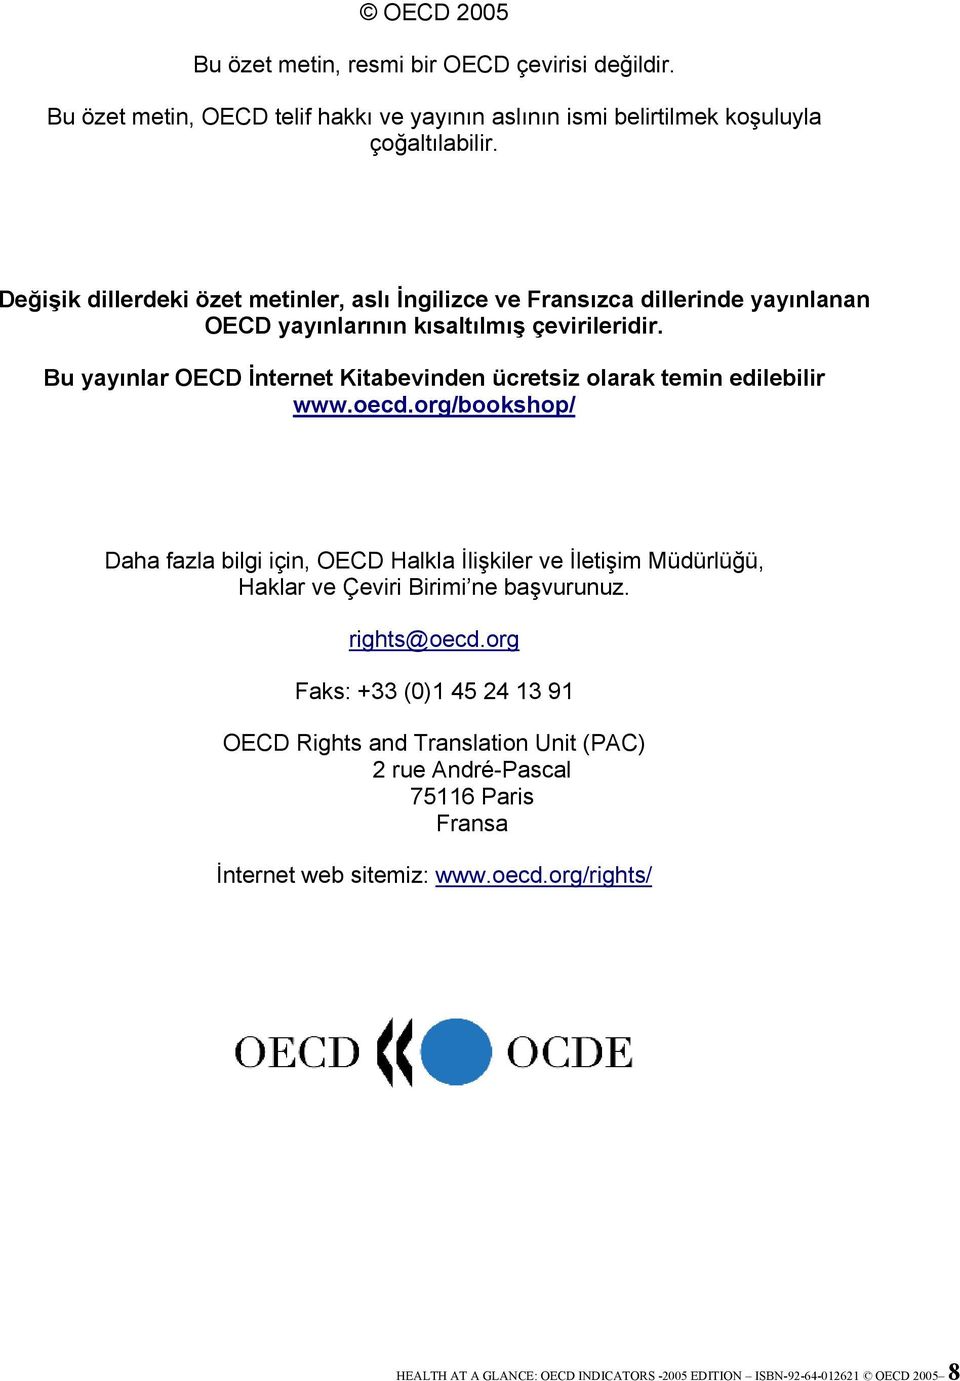 Bu yayınlar OECD İnternet Kitabevinden ücretsiz olarak temin edilebilir www.oecd.